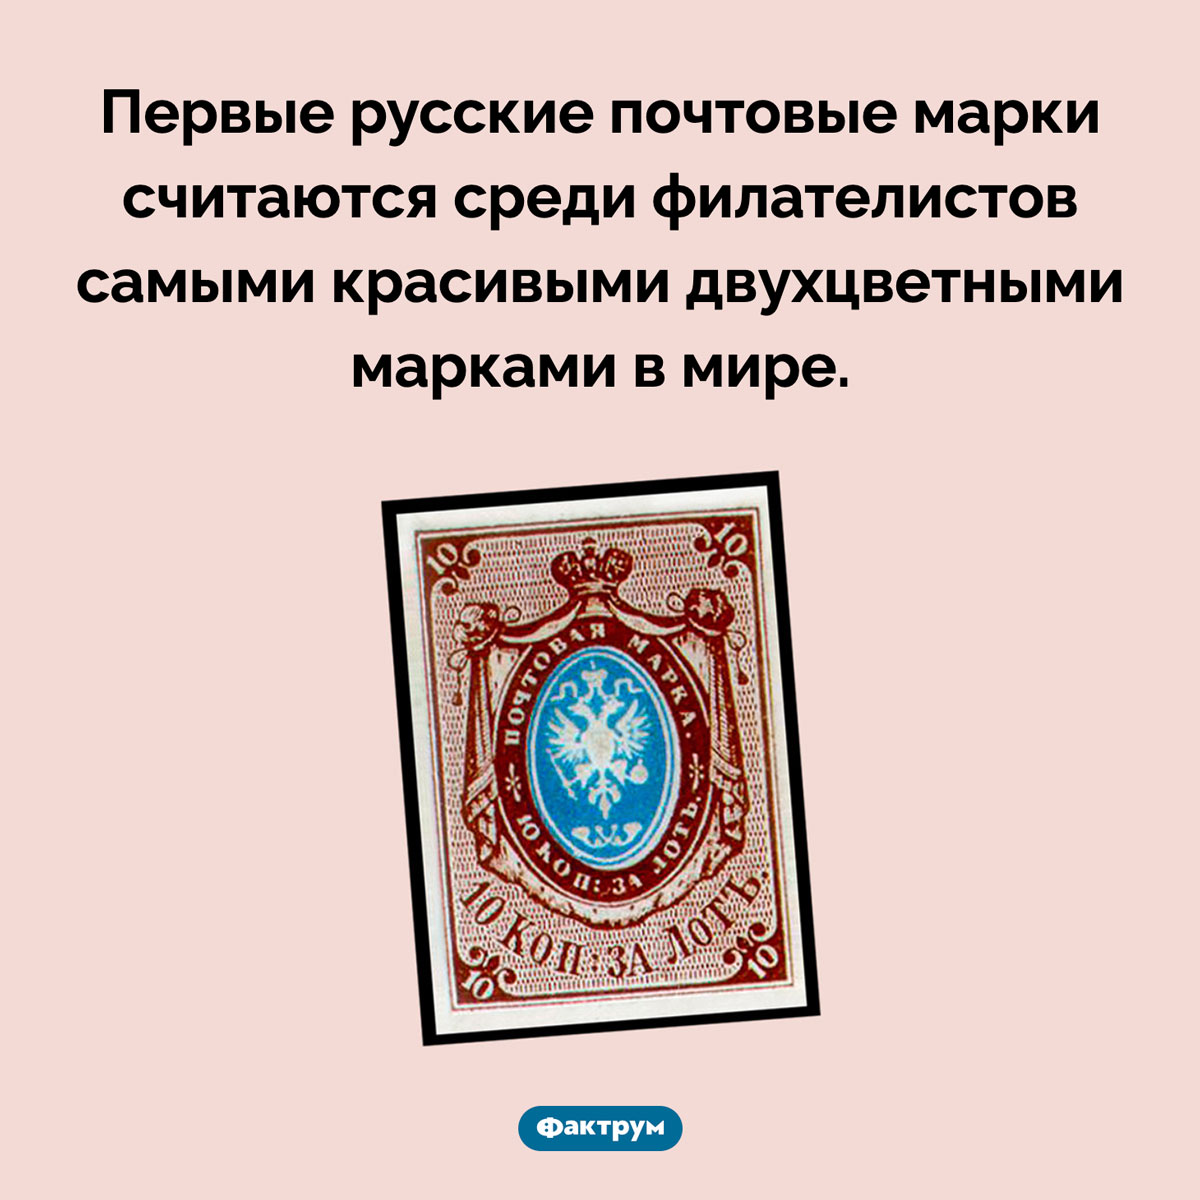 Самые красивые двухцветные марки. Первые русские почтовые марки считаются среди филателистов самыми красивыми двухцветными марками в мире.